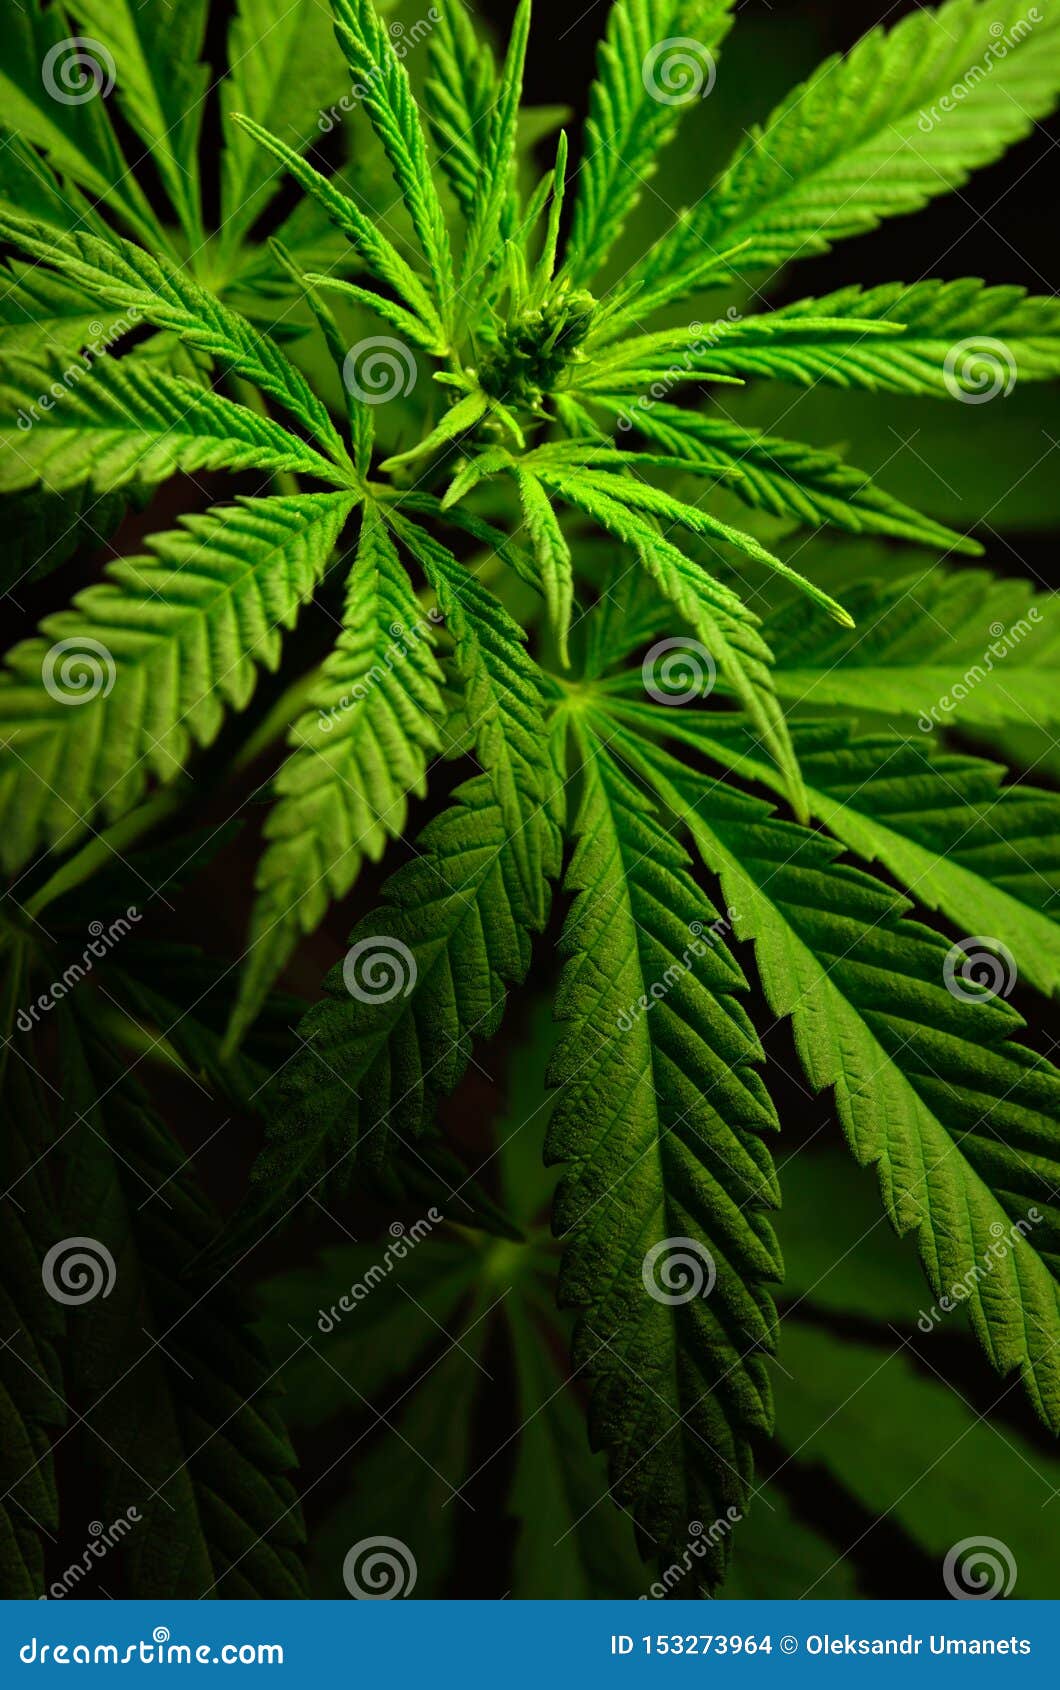 Картинка конопля большие для марихуаны